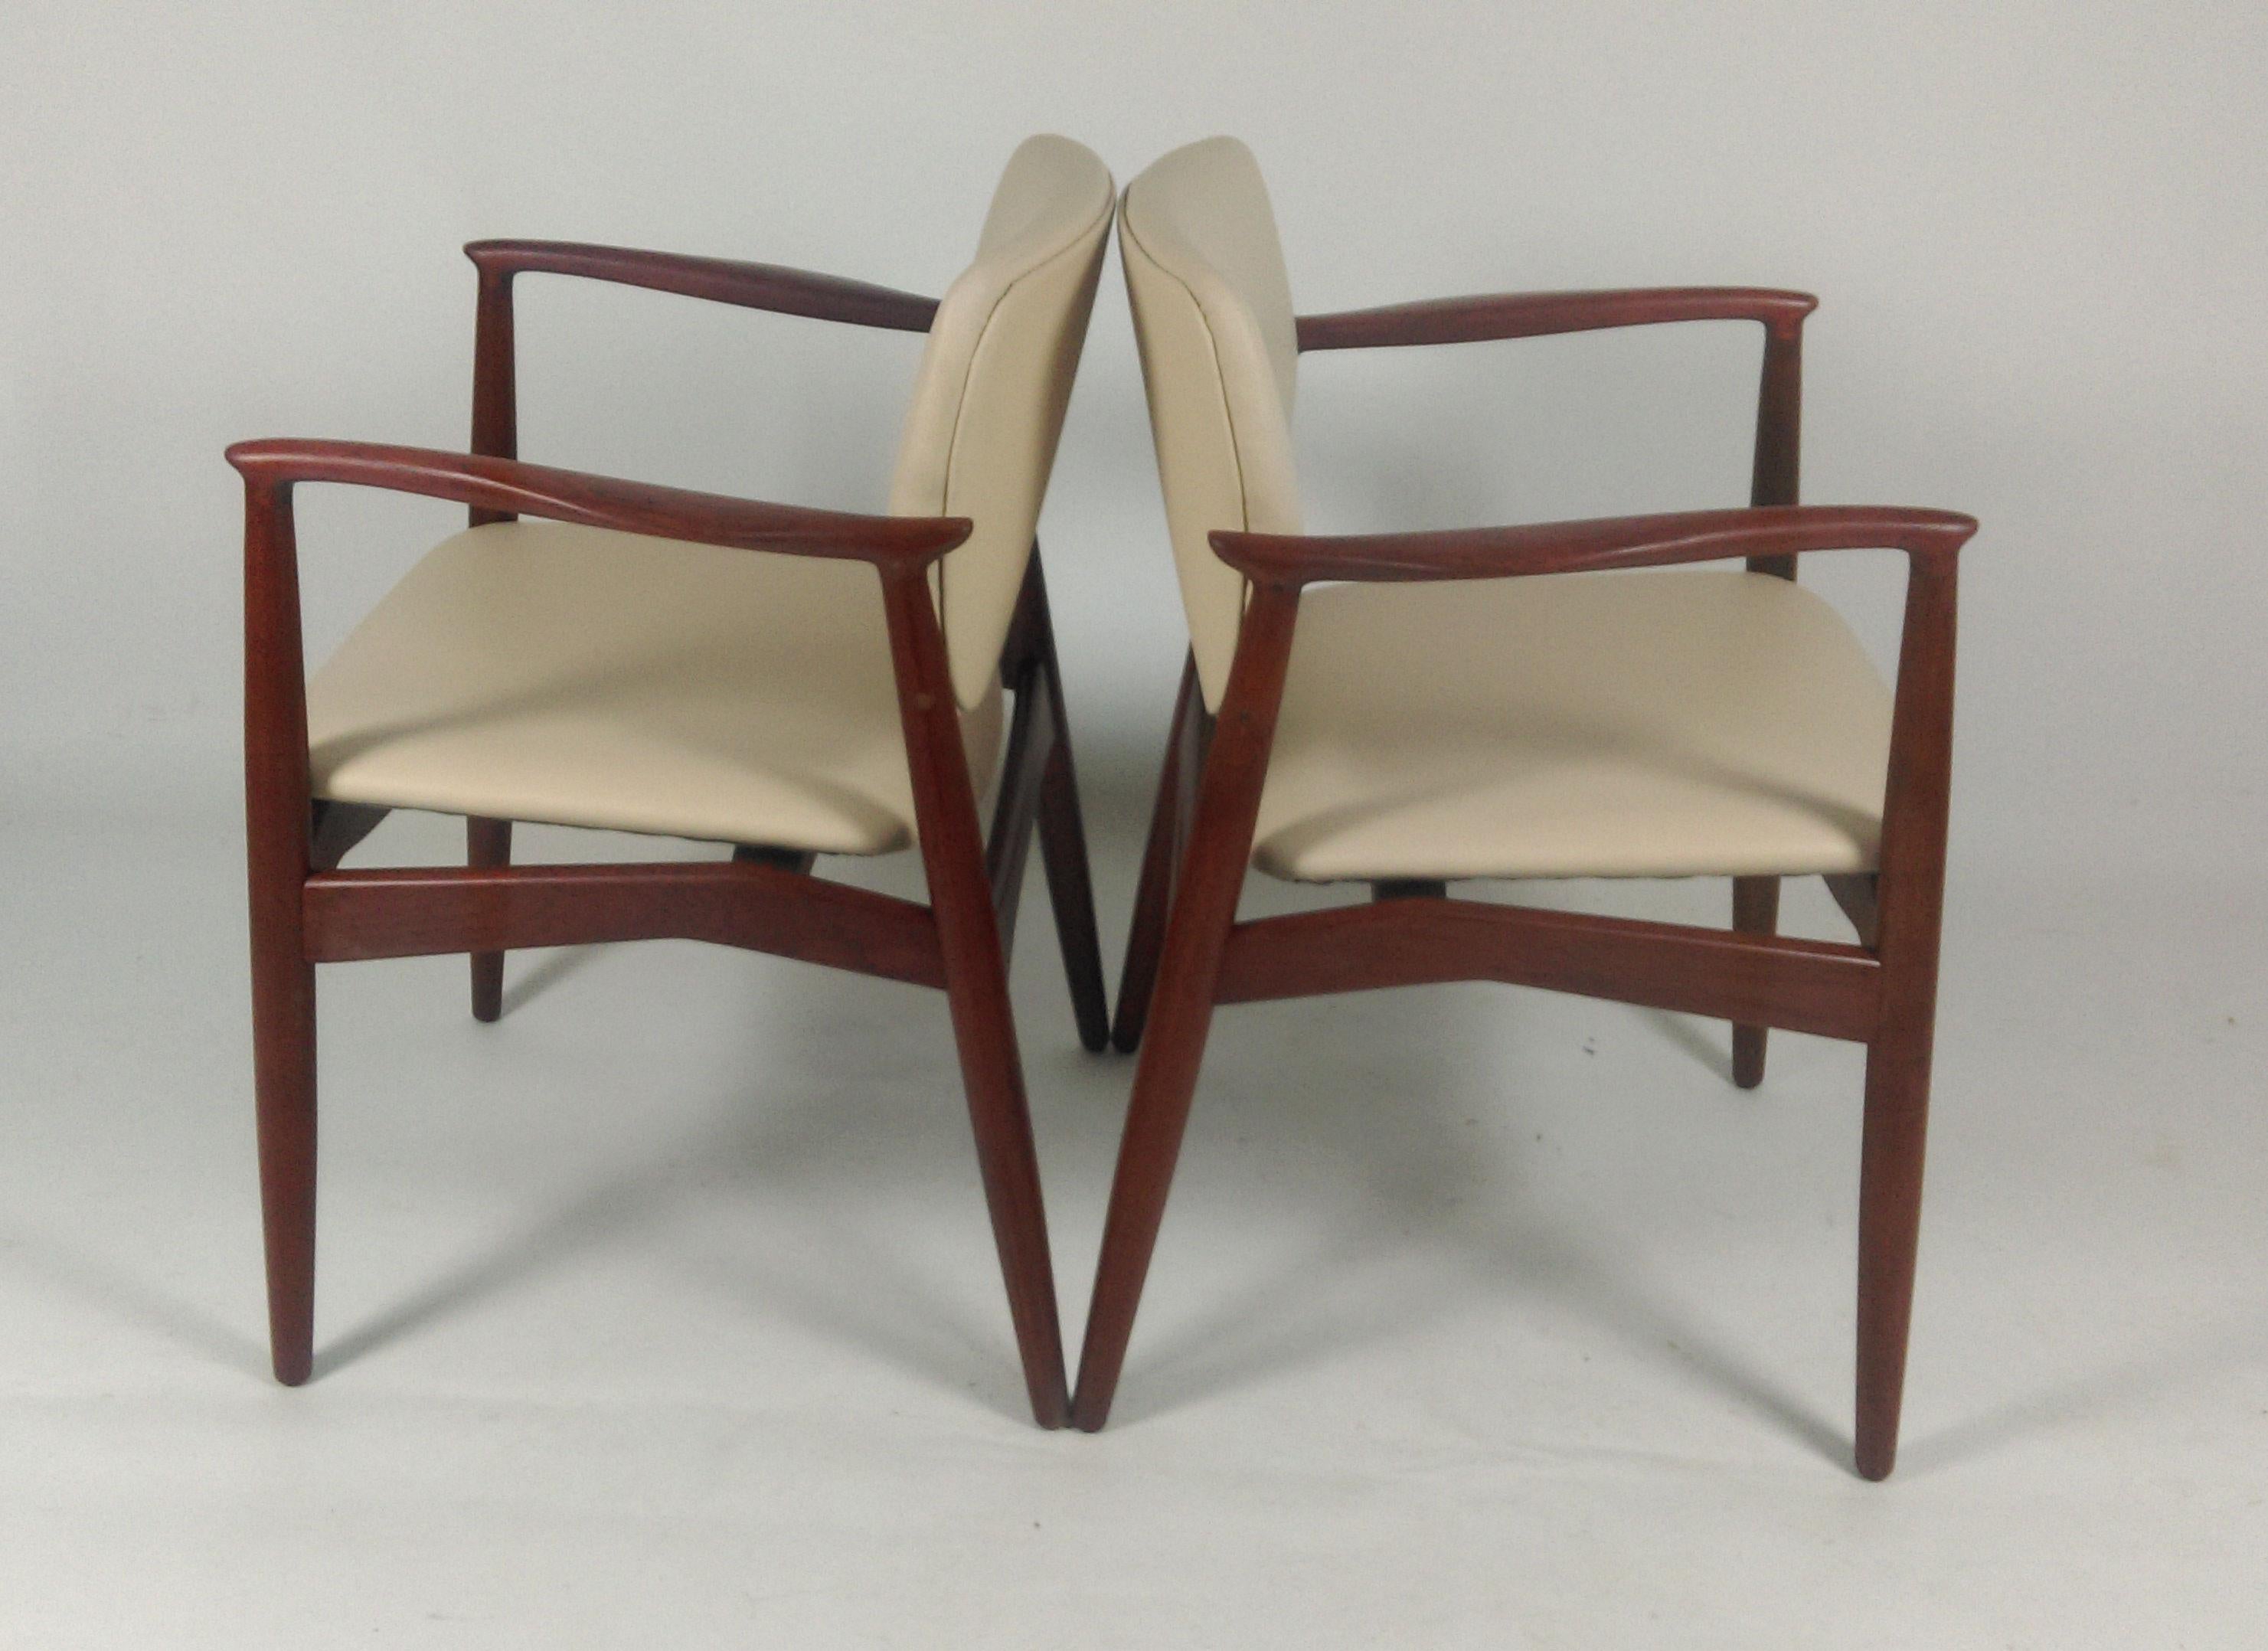 chaise de capitaine modèle 67 d'Erik Buch des années 1960 en teck pour Ørum Møbelfabrik, retapissée en cuir exclusif de qualité supérieure de Sorensen Leather.

Les fauteuils de forme organique bien conçus avec leurs sièges confortables ont été